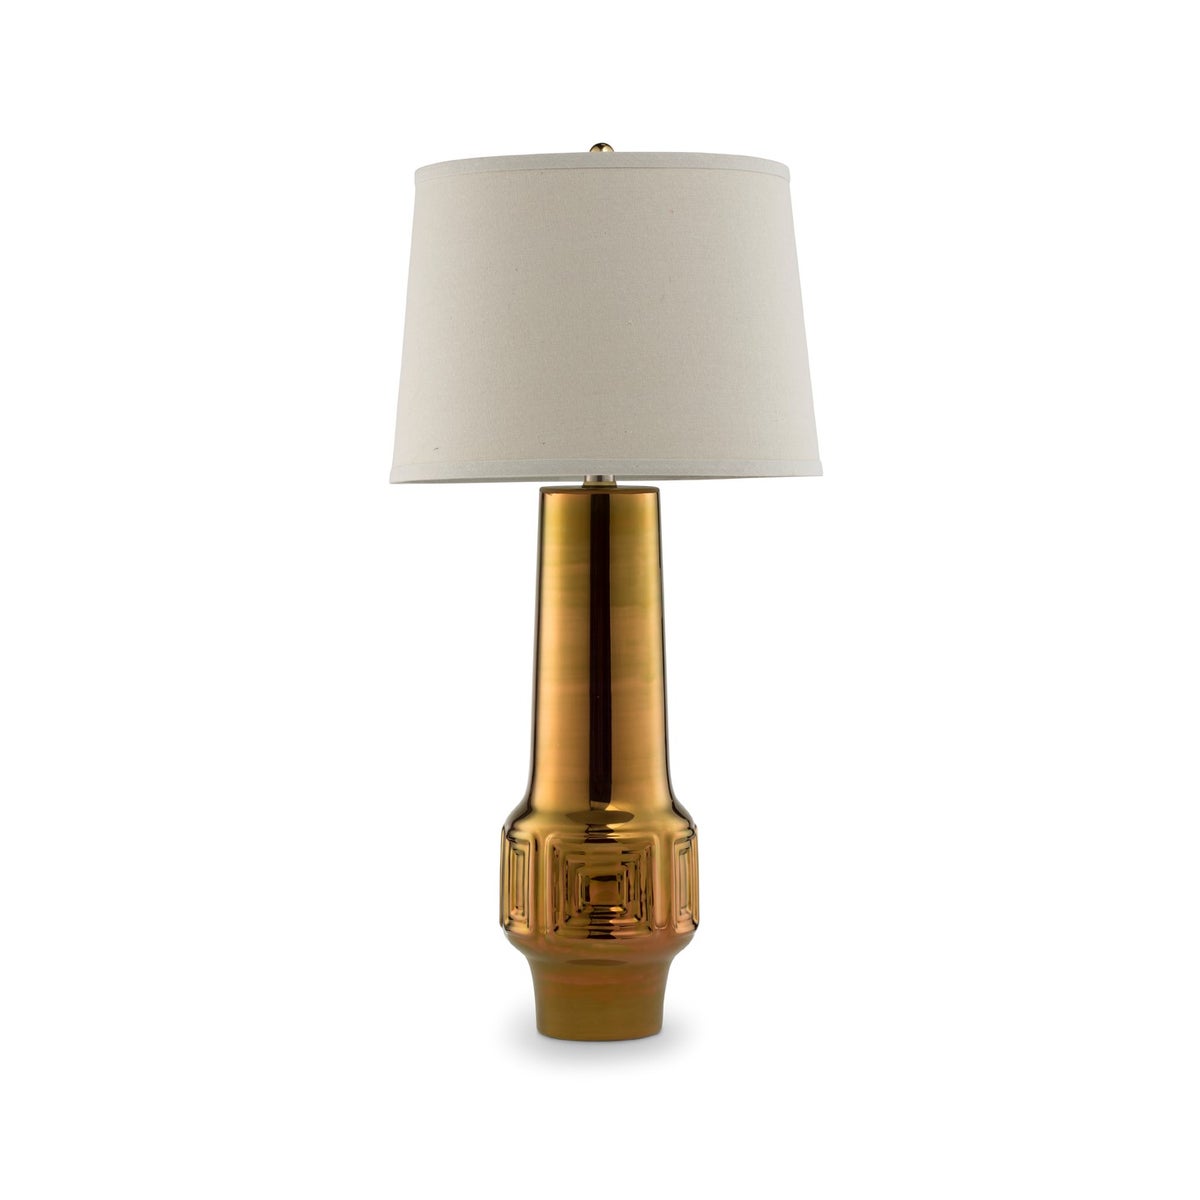 Del Rey Grande Lamp - Polished Antique Gold